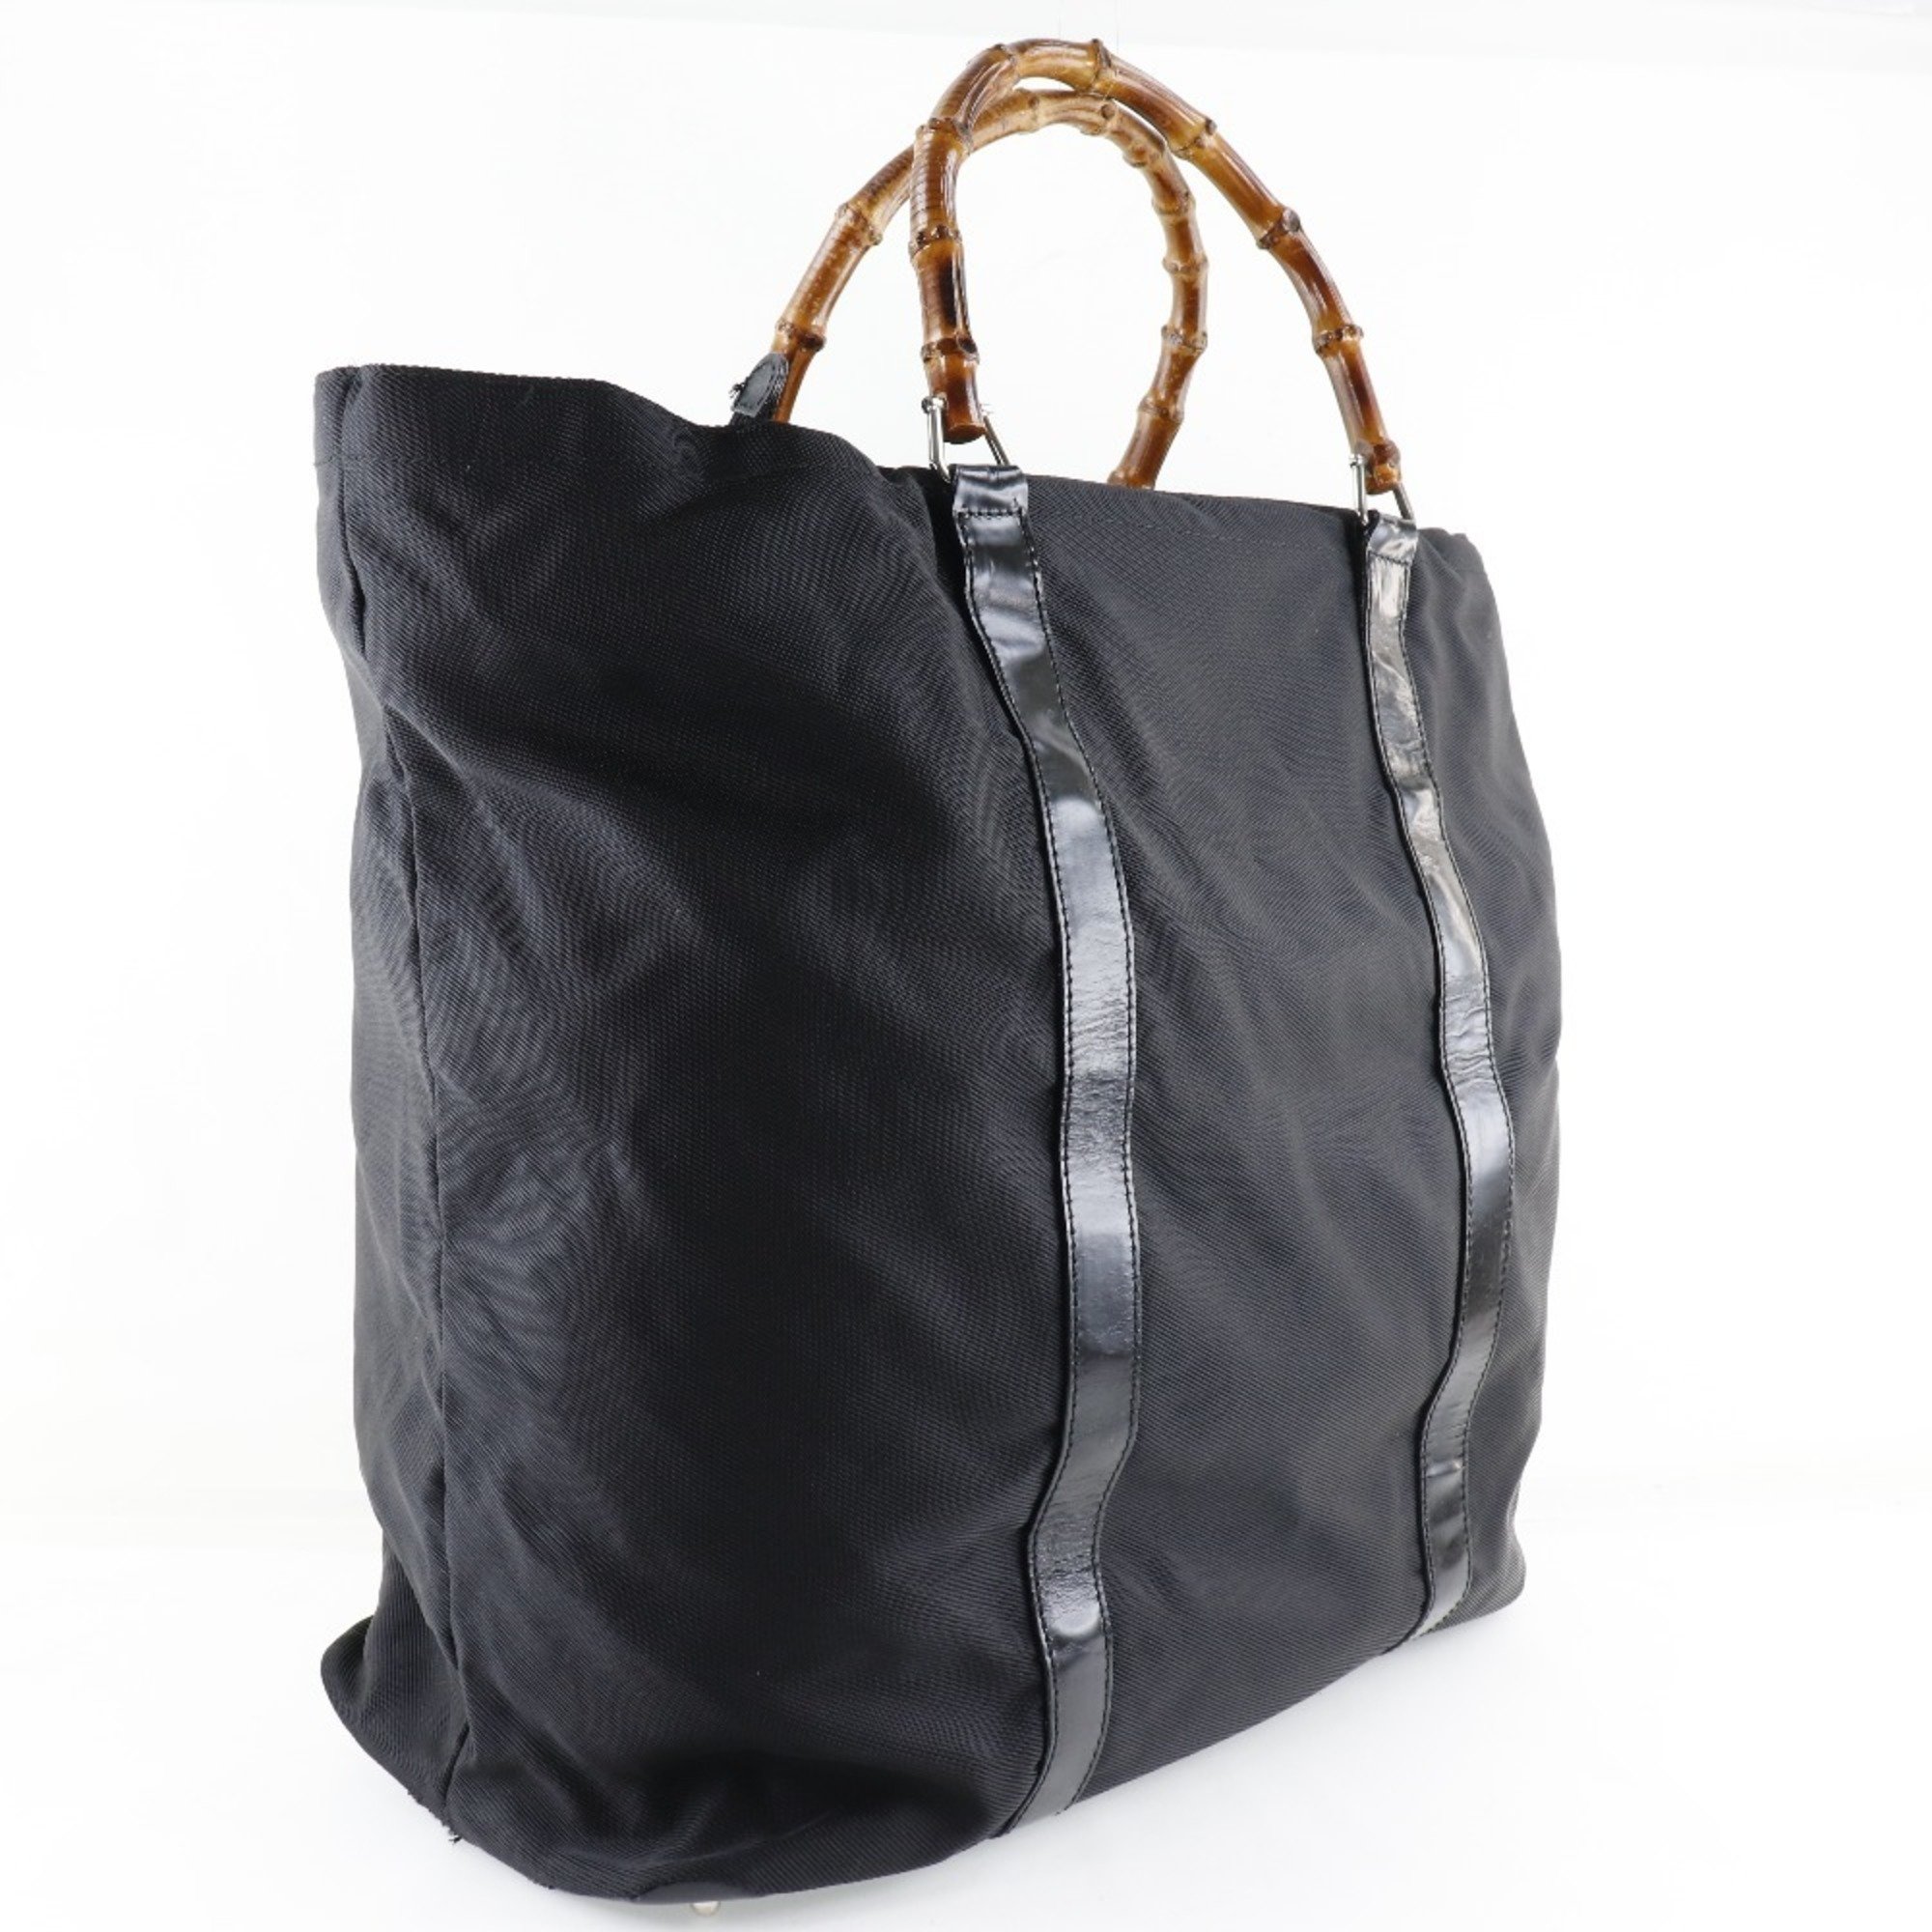 GUCCI Gucci Bamboo Bag 002-2058-0412-5 Nylon Canvas x Leather Black Unisex Tote